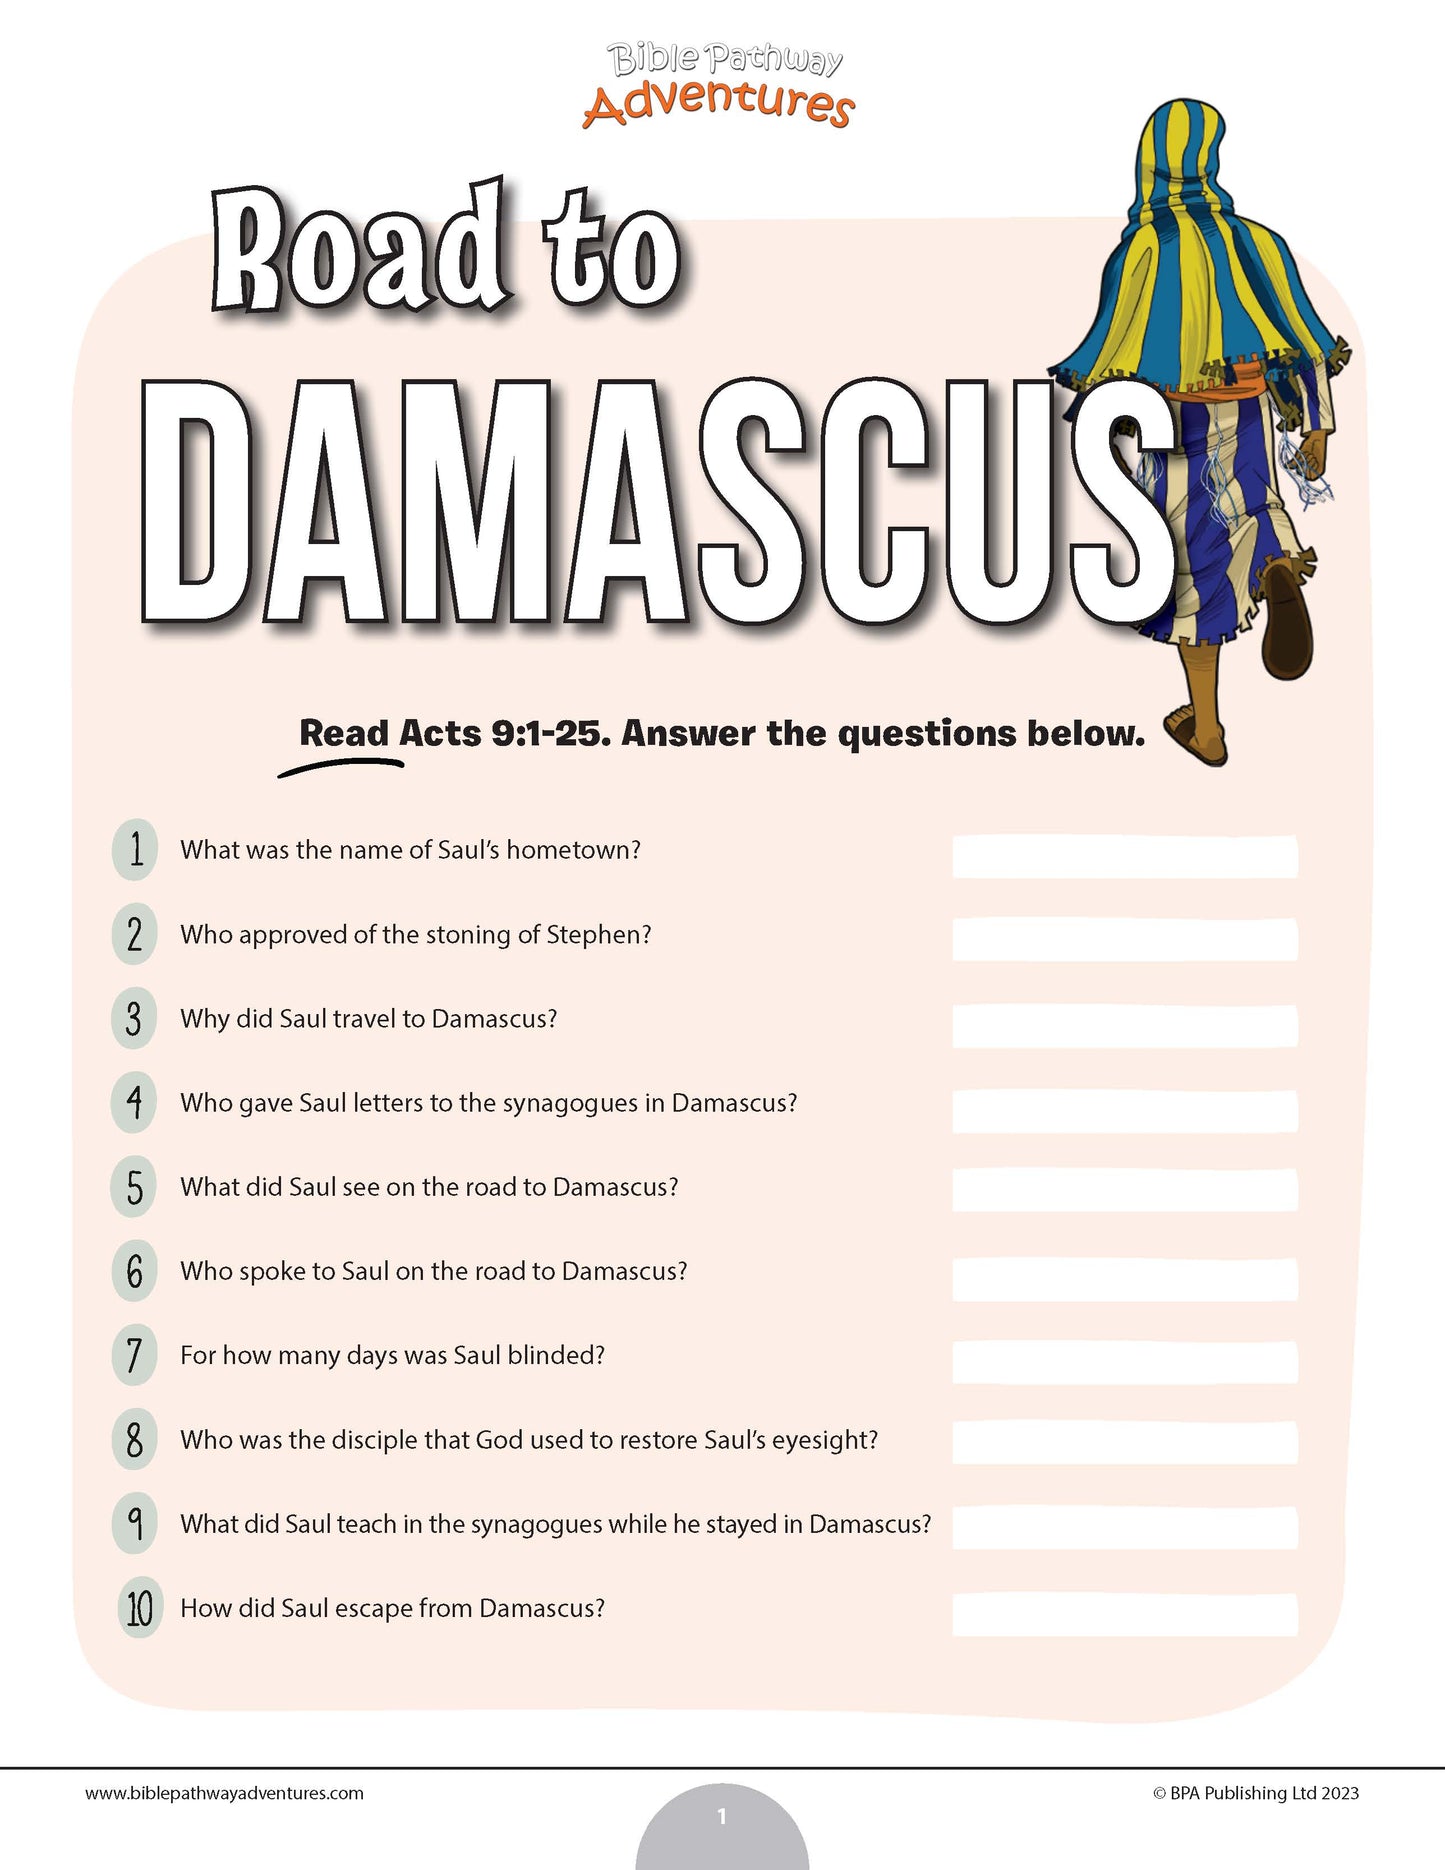 Road to Damascus quiz